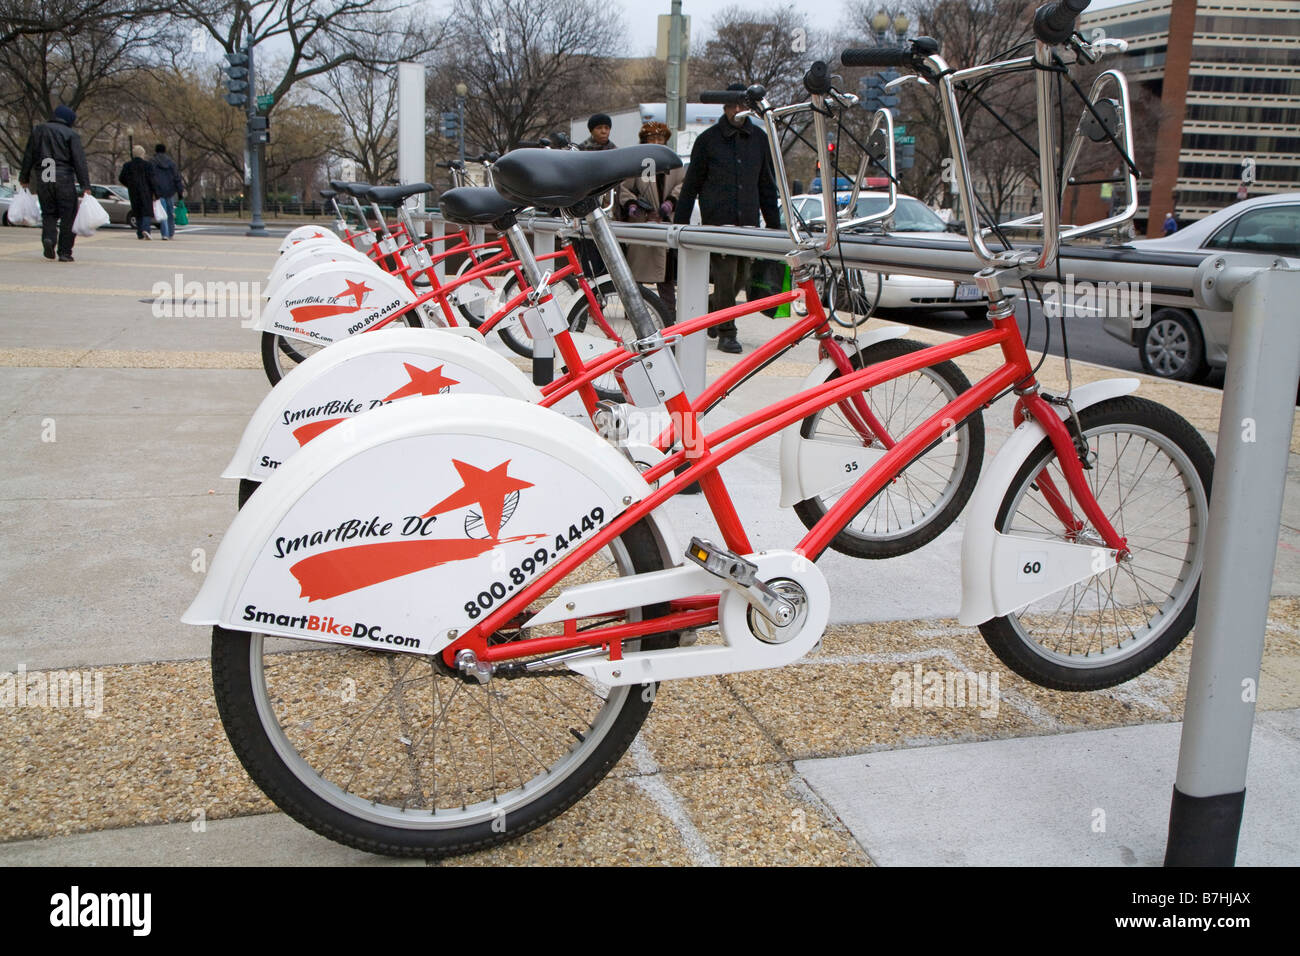 Washington DC e biciclette in attesa di utenti in un self service noleggio bici chiosco Foto Stock